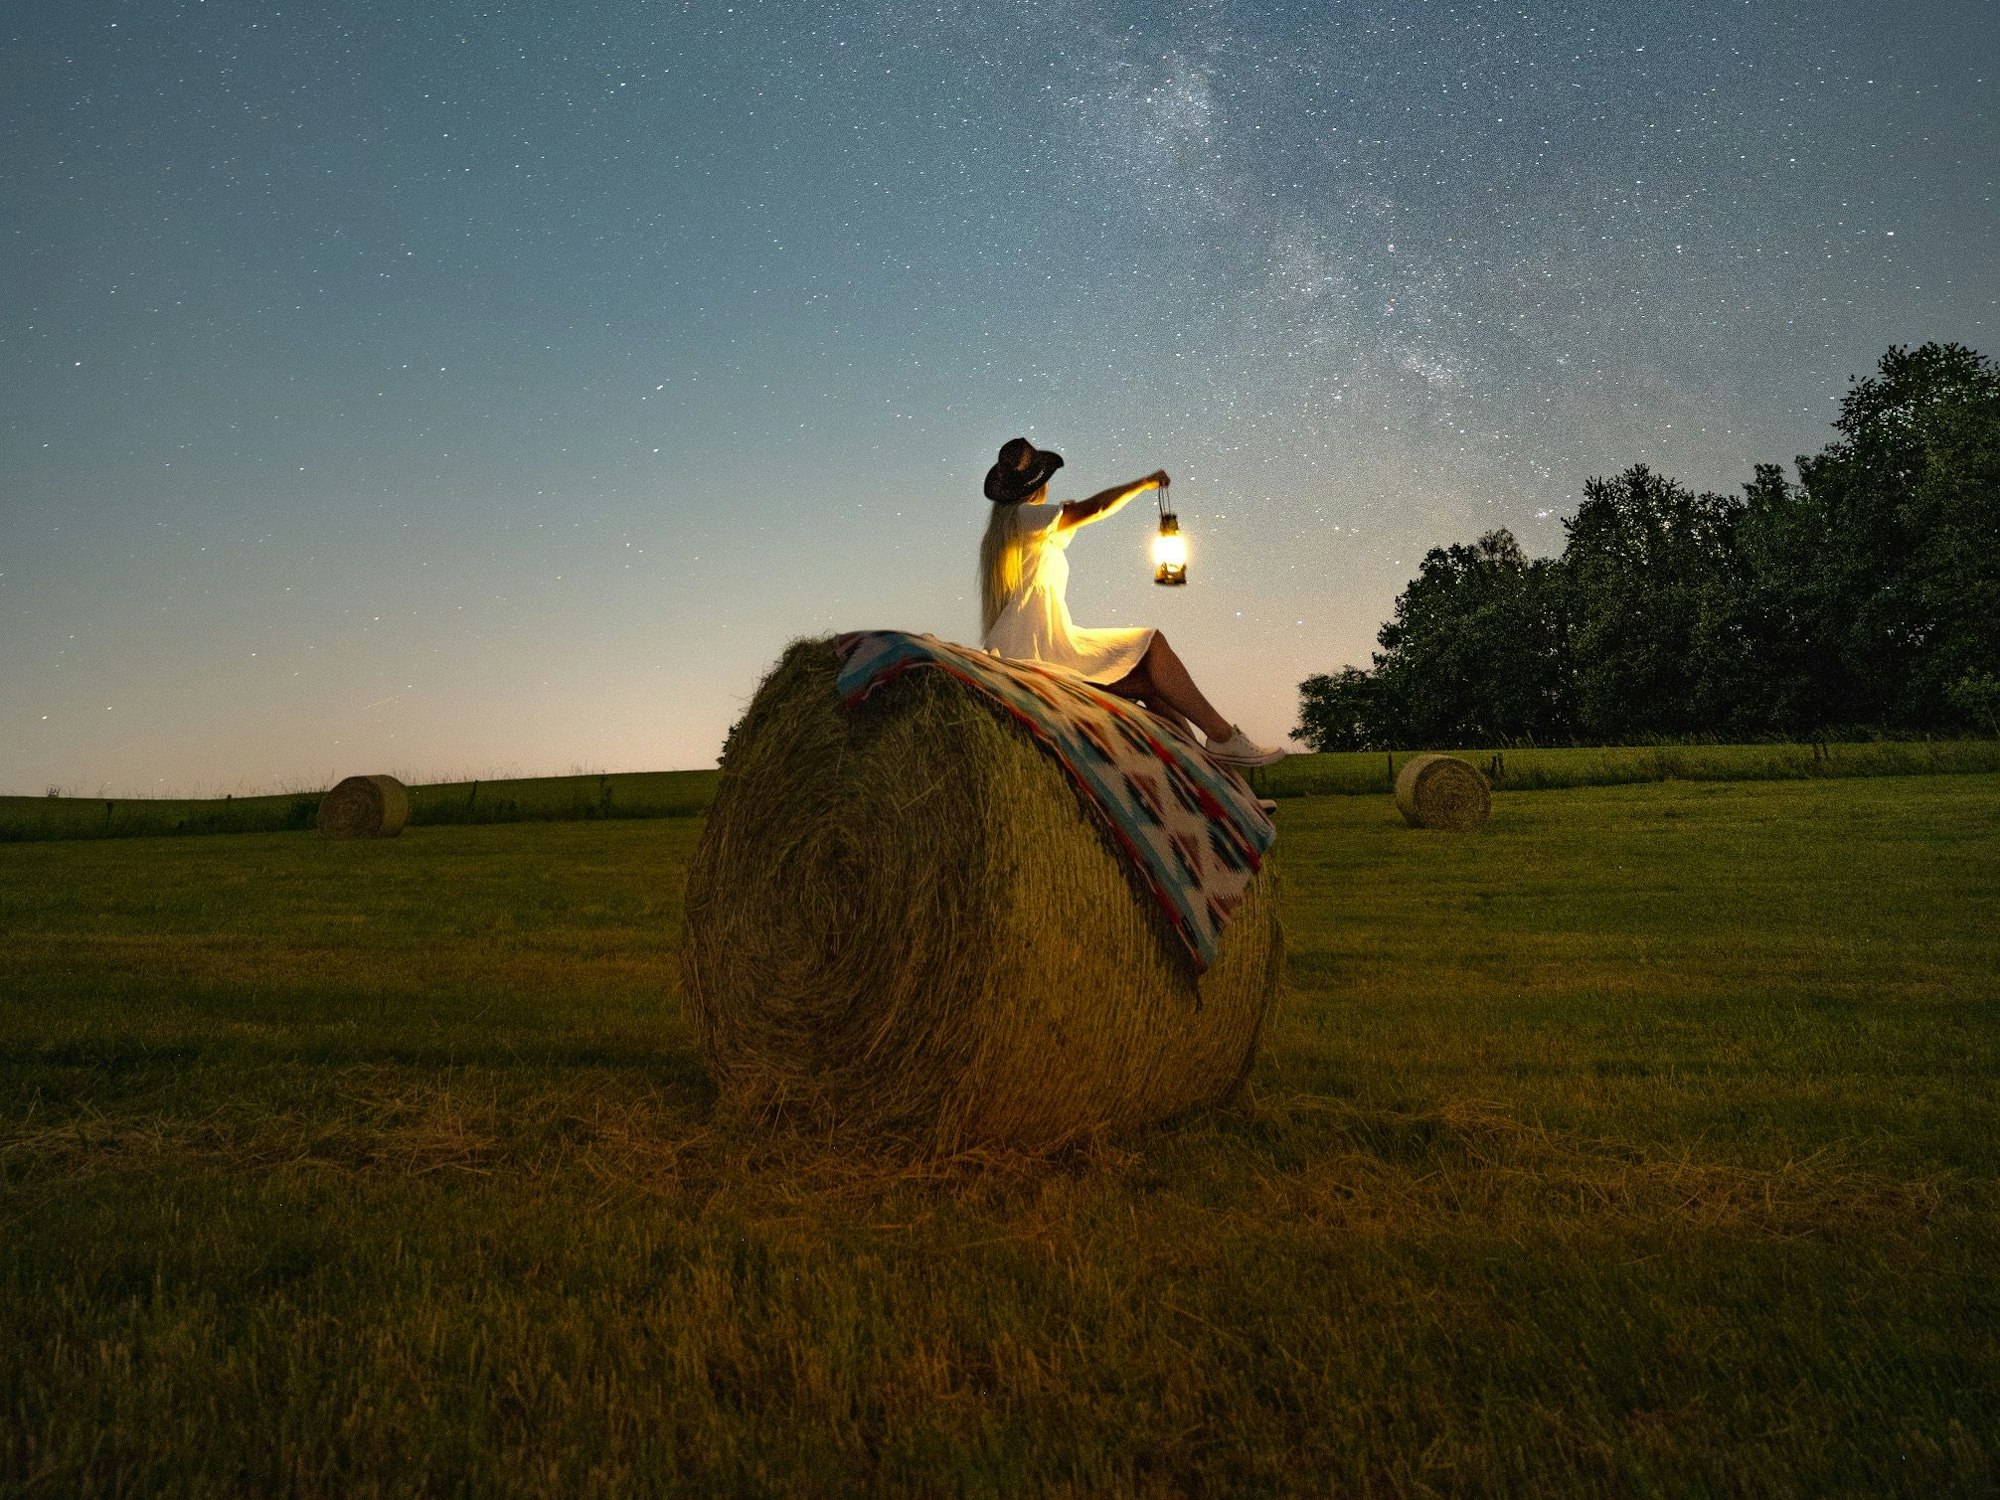 Eine Frau sitzt nachts auf einem Heuballen und hält eine leuchtende Laterne in die Höhe. Am Himmel sind zahlreiche Sterne zu erkennen.